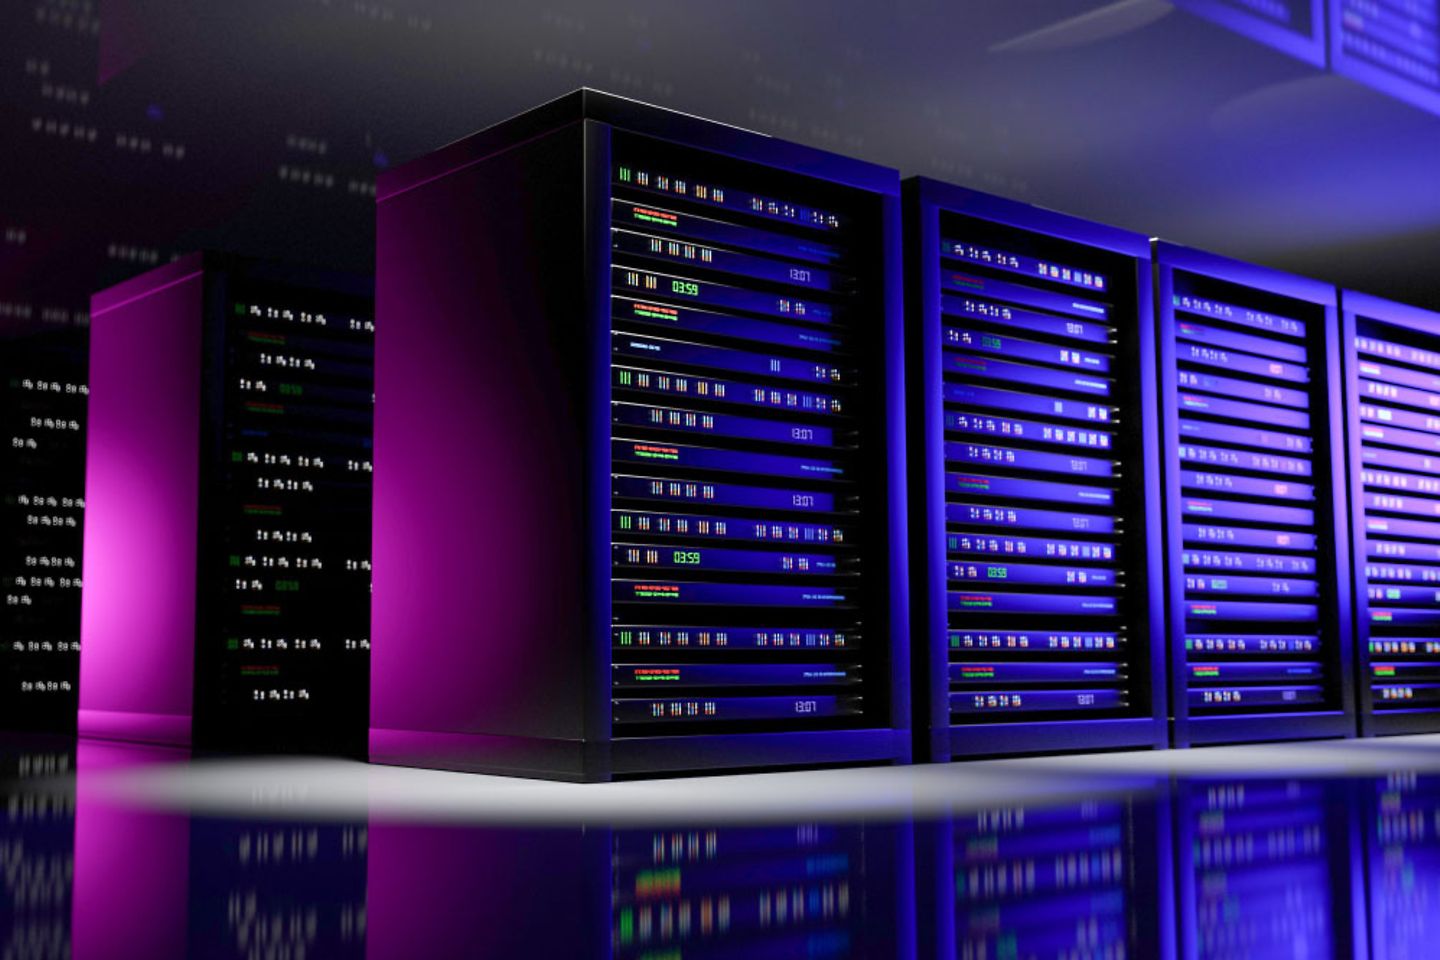 Server rack in a cloud computing center's server room in ultra-violet light.